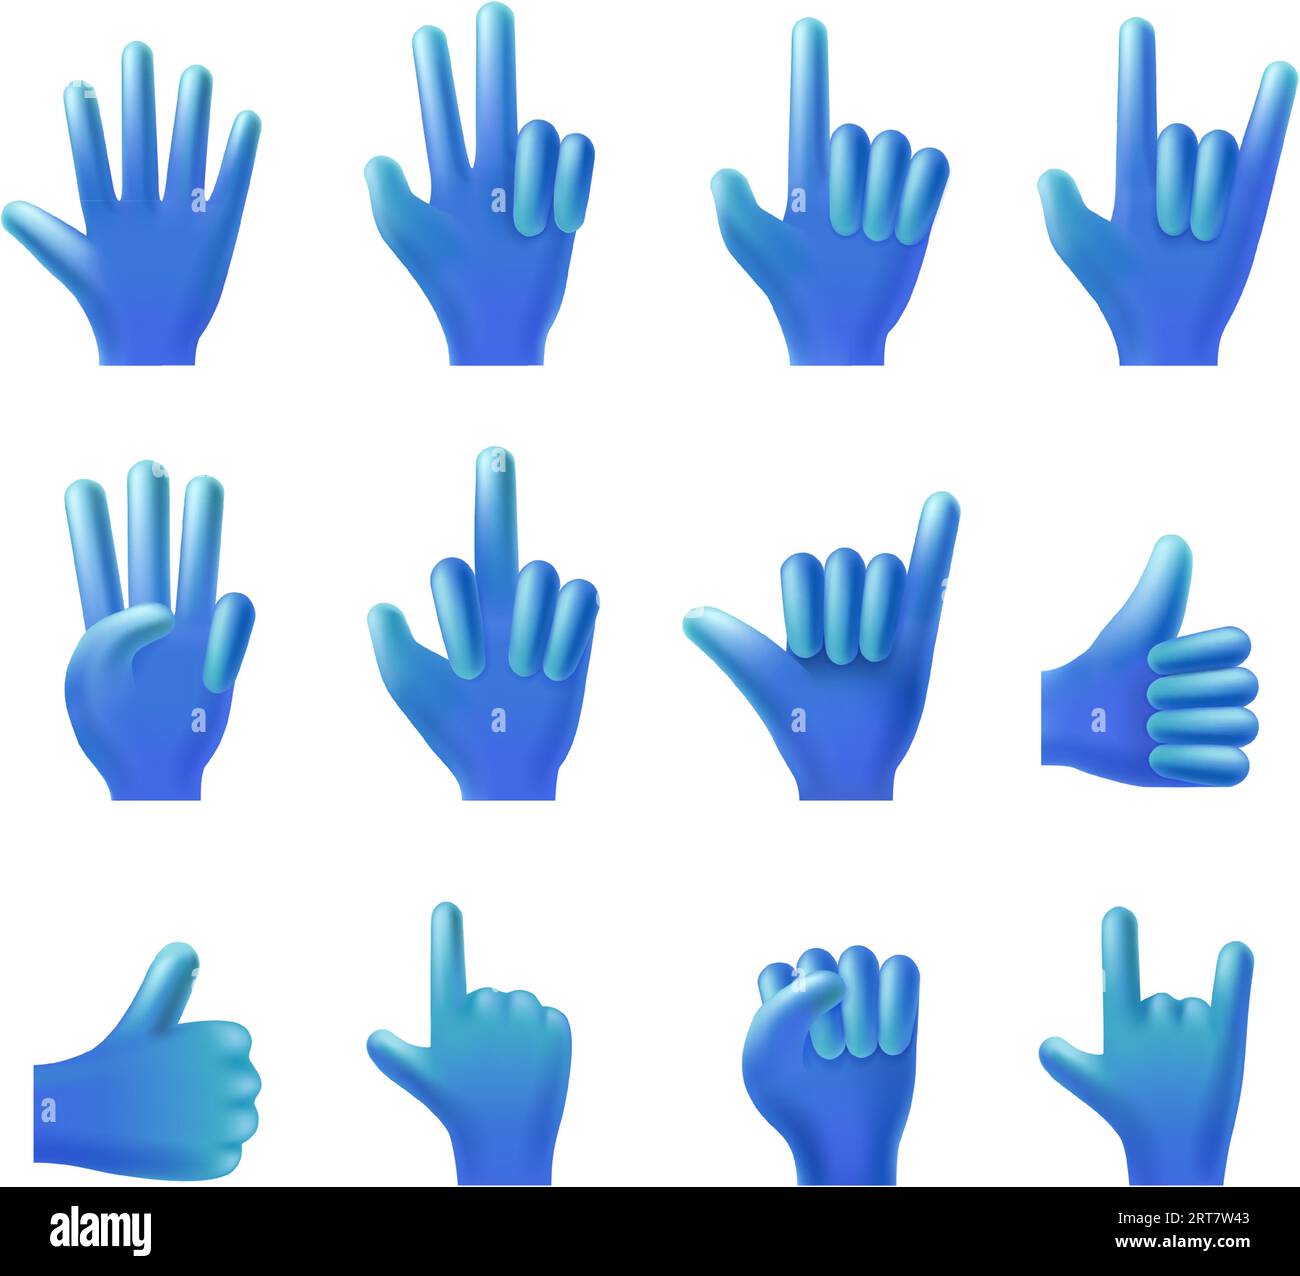 Raccolta gesti delle mani. Gesto con dita appuntite 3D, mano saltellante o saltellante, pollice in alto e set di illustrazioni vettoriali della Vittoria Illustrazione Vettoriale